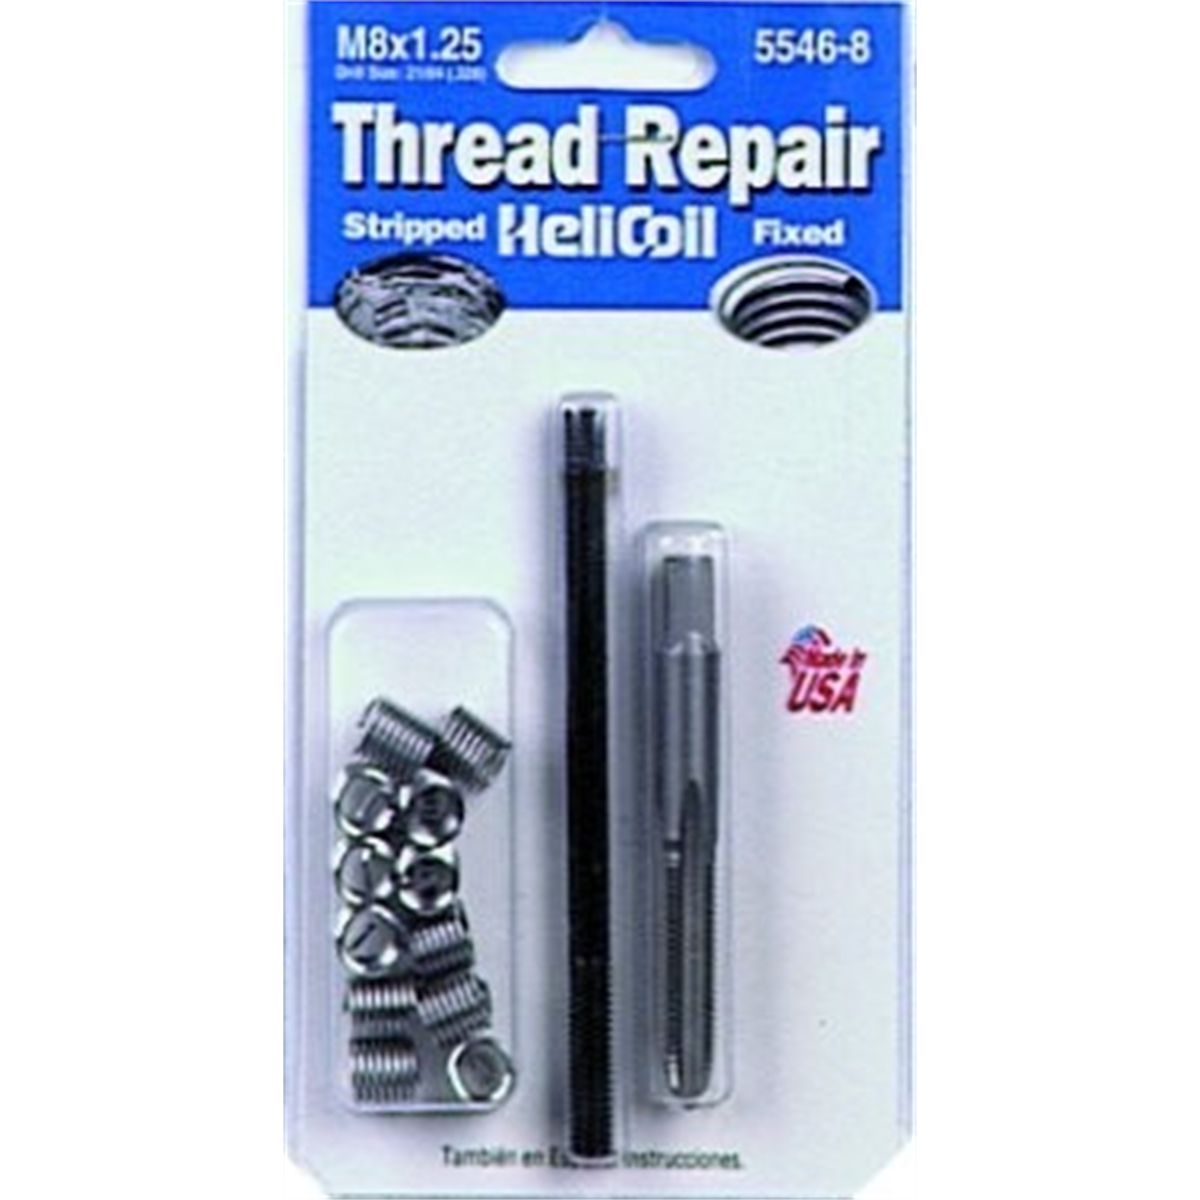 Metric Coarse Thread Repair Kit - M8x1.25 x 12.0mm